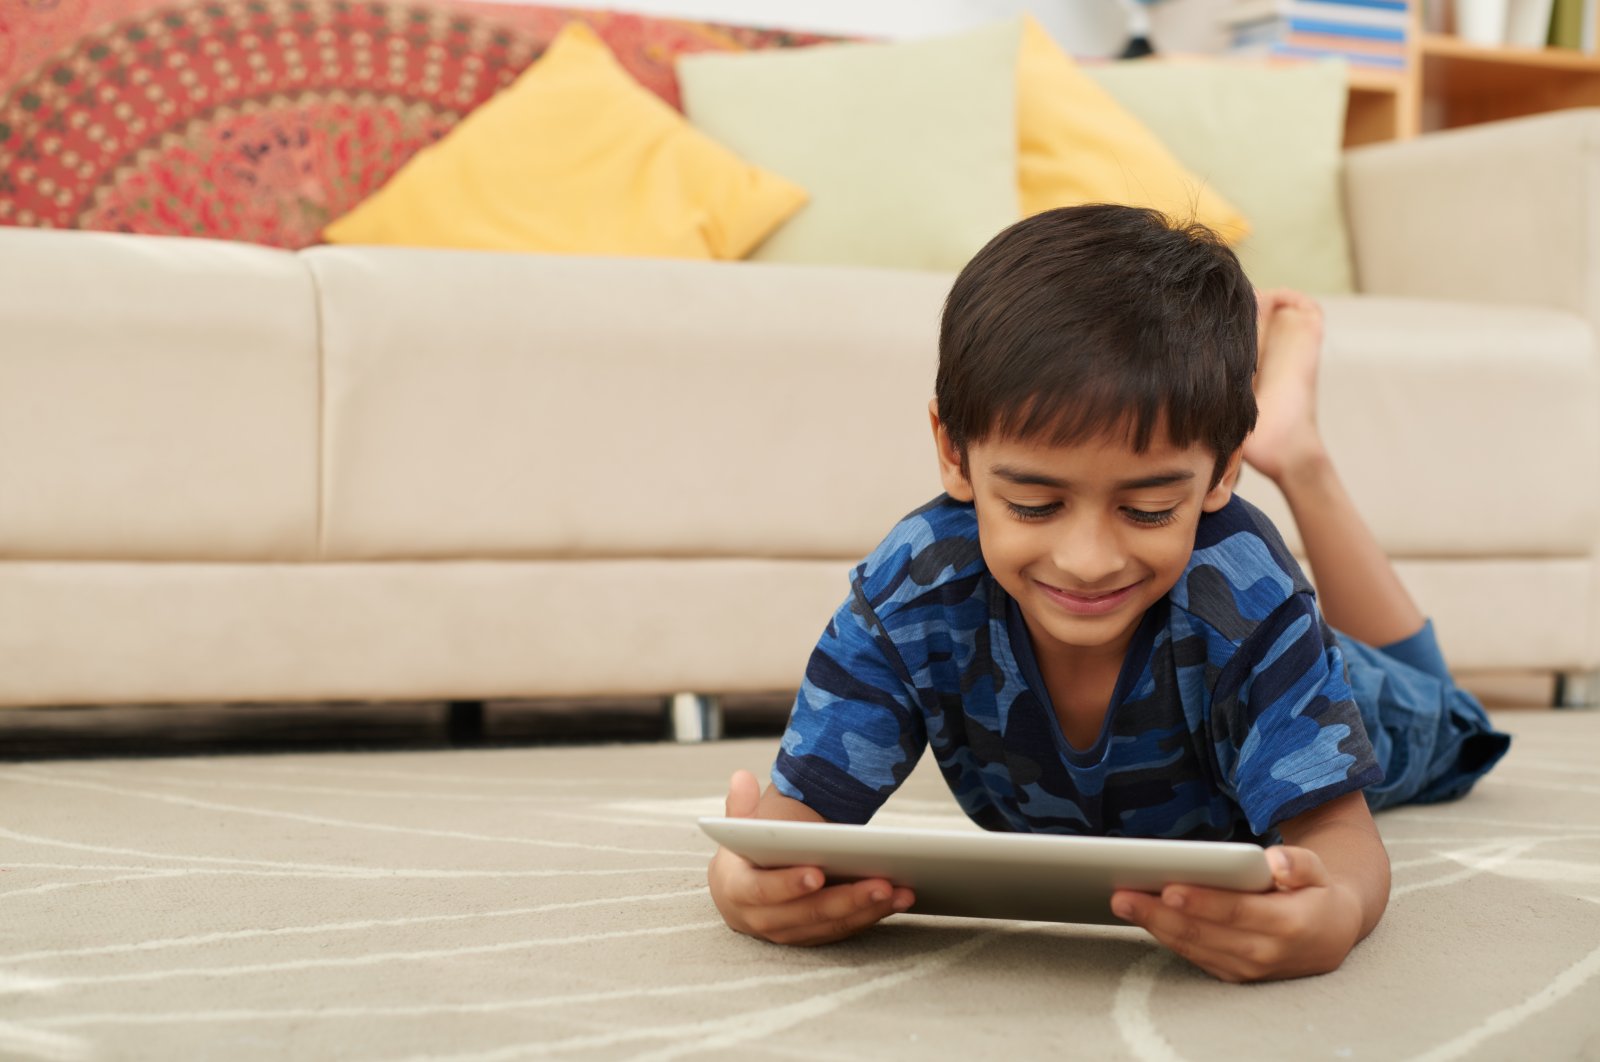 ‘Memantau jejak digital anak-anak sangat penting’